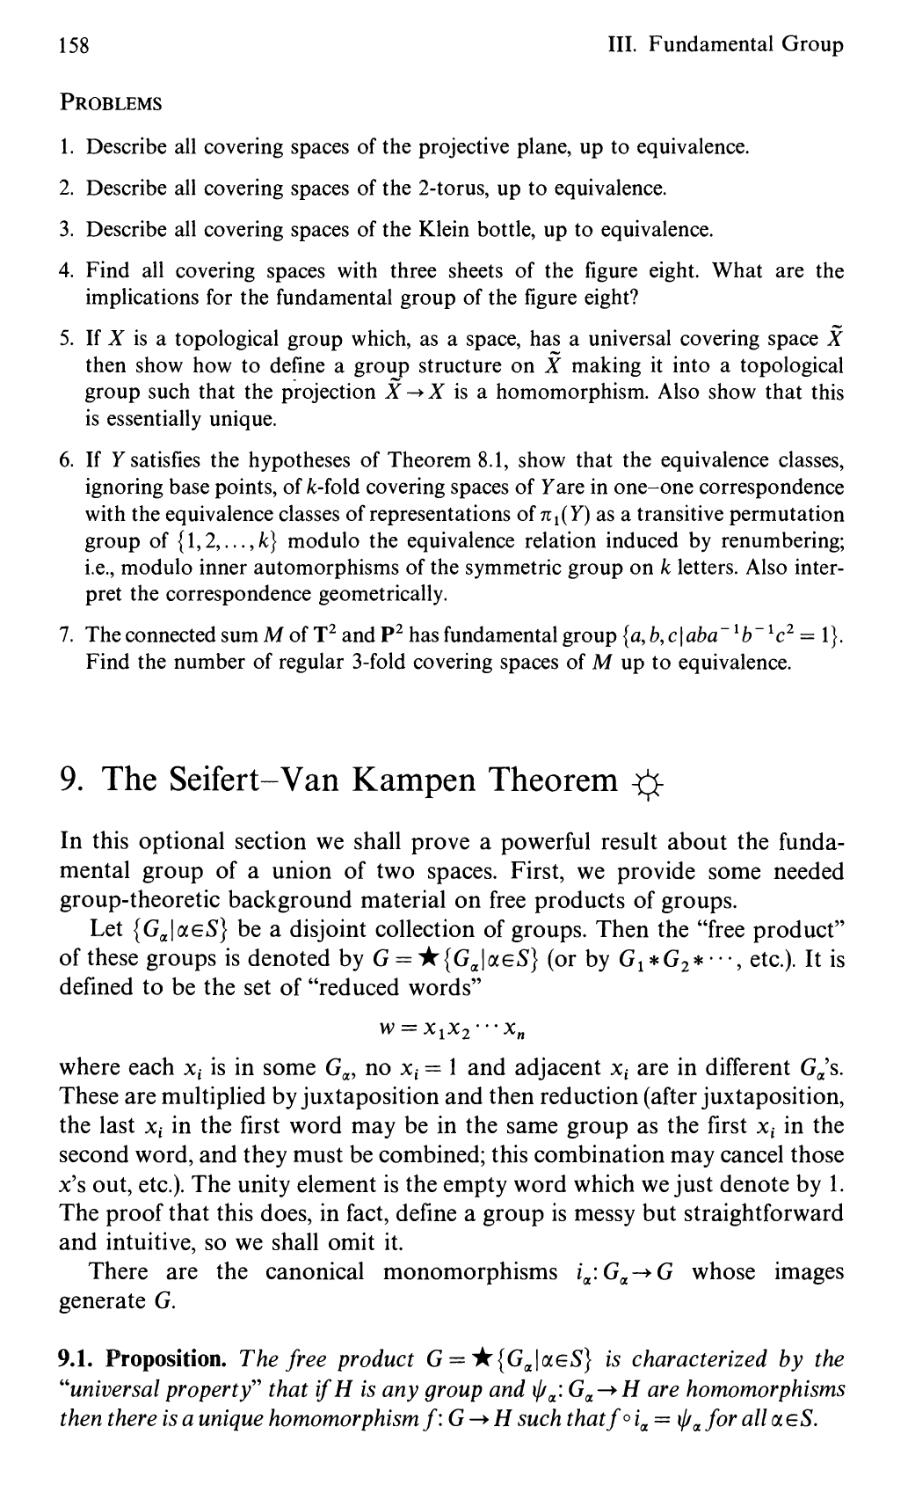 9. The Seifert-Van Kampen Theorem